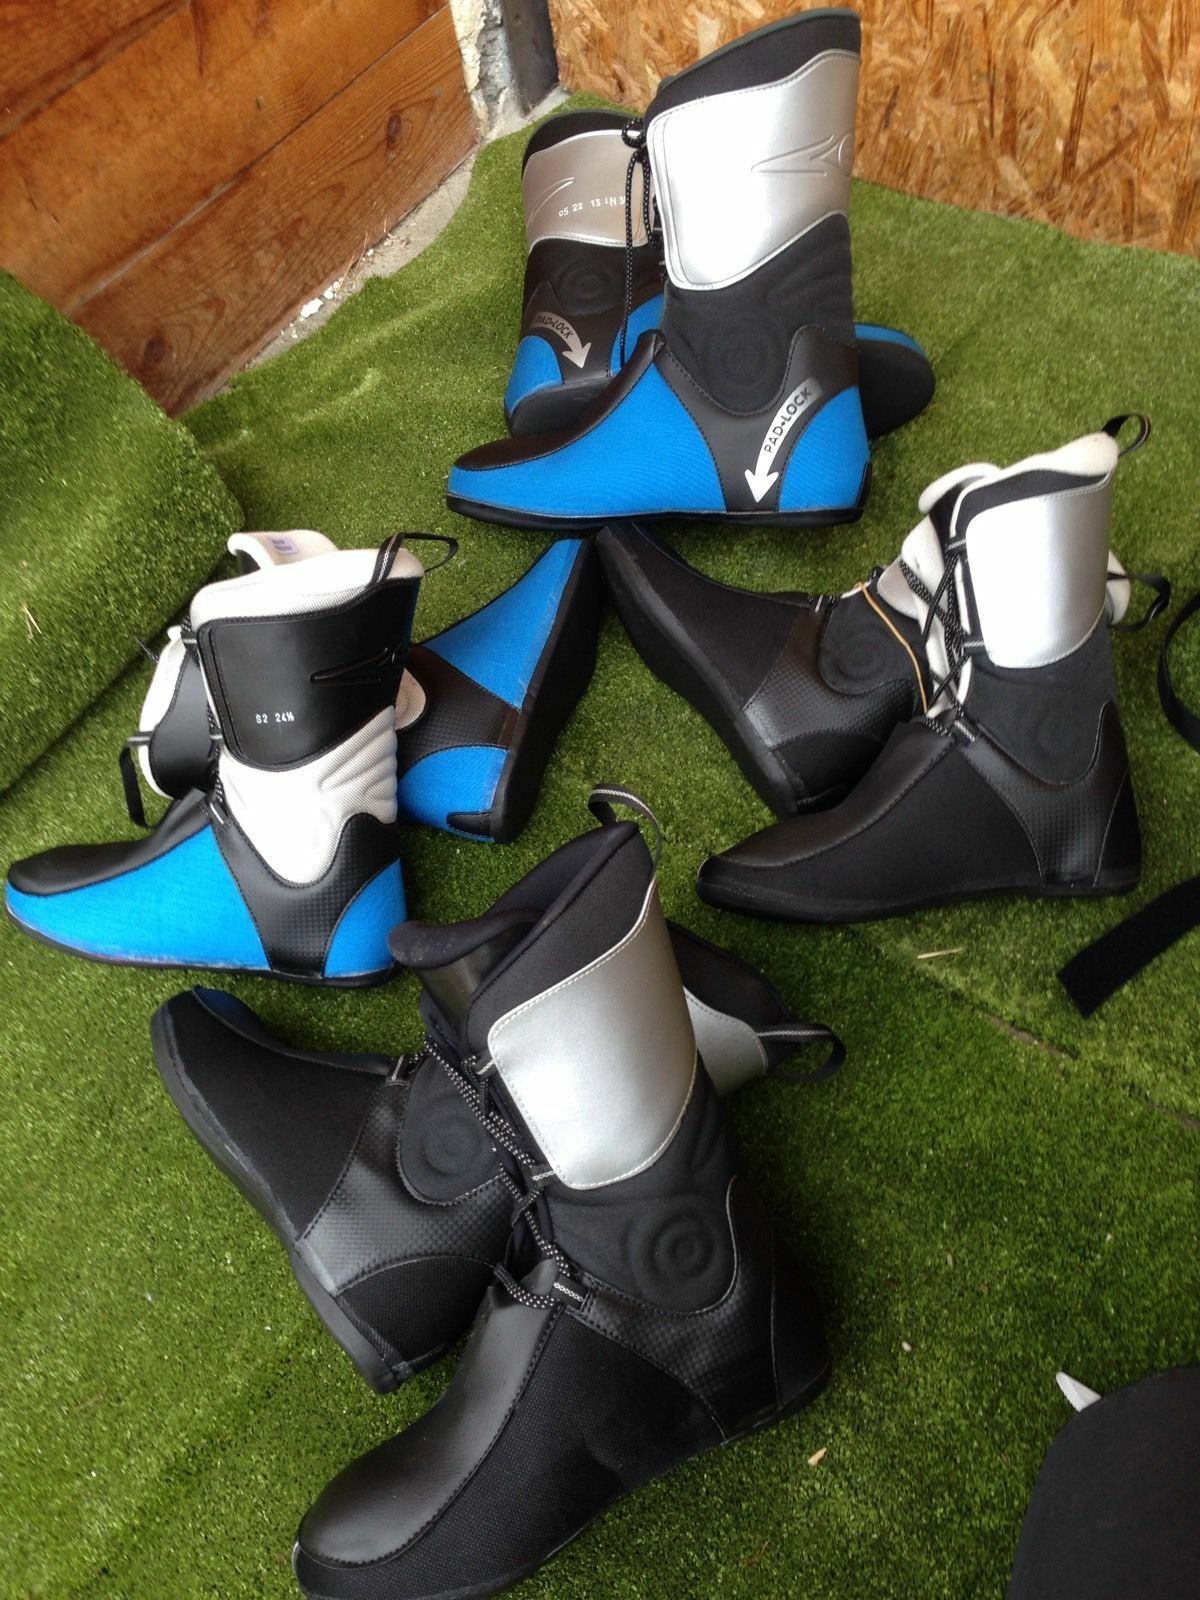 Scarpette tradizionali per scarponi da sci alpino liners for alpine ski boots